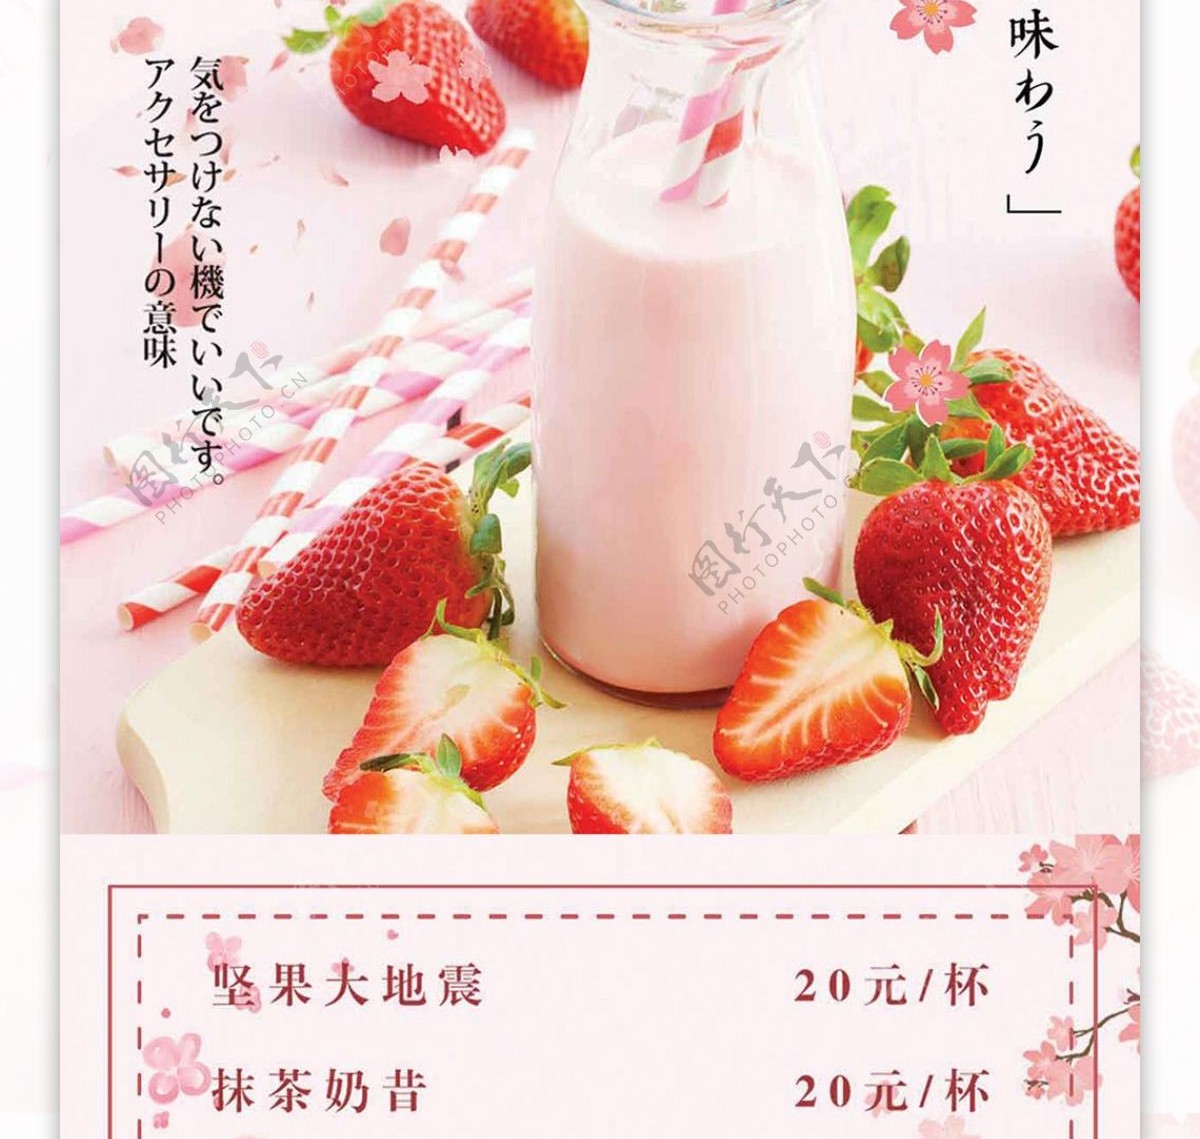 粉色浪漫清新夏季清凉奶昔菜谱设计